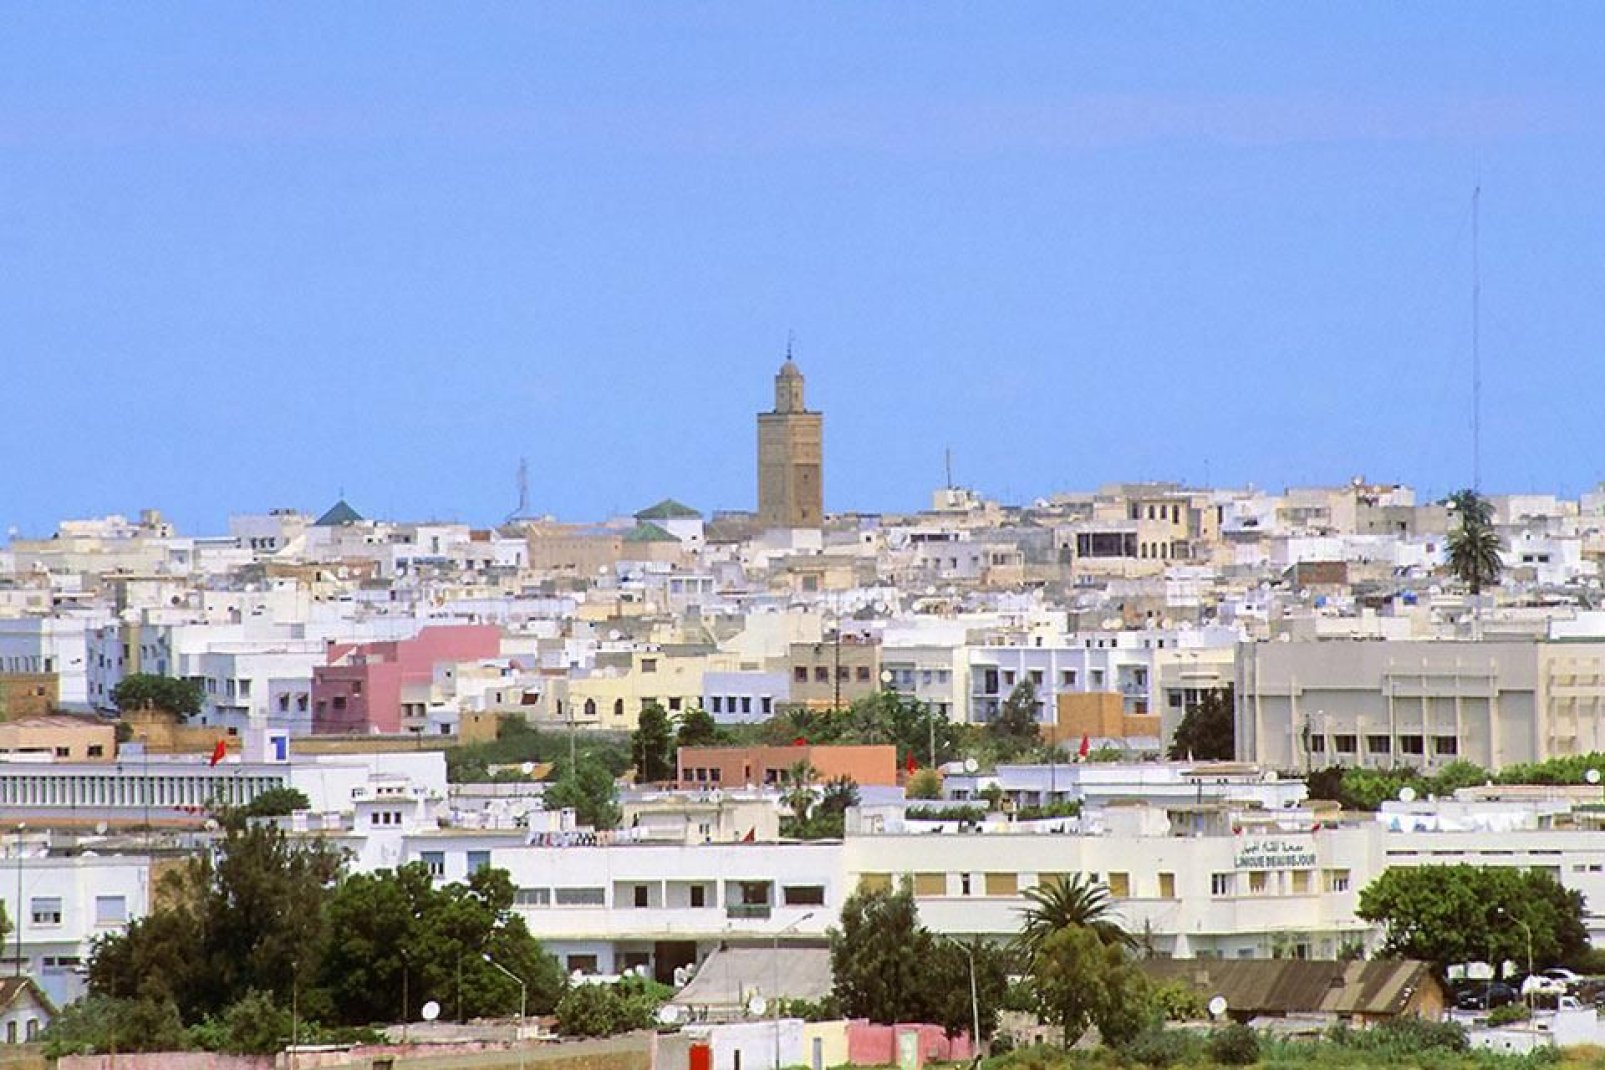 Rabat, una ciudad histórica, esconde numerosos tesoros en el seno de sus murallas. Mezquita, barrio judío, casba de los Oudaias...la ciudad vale la pena